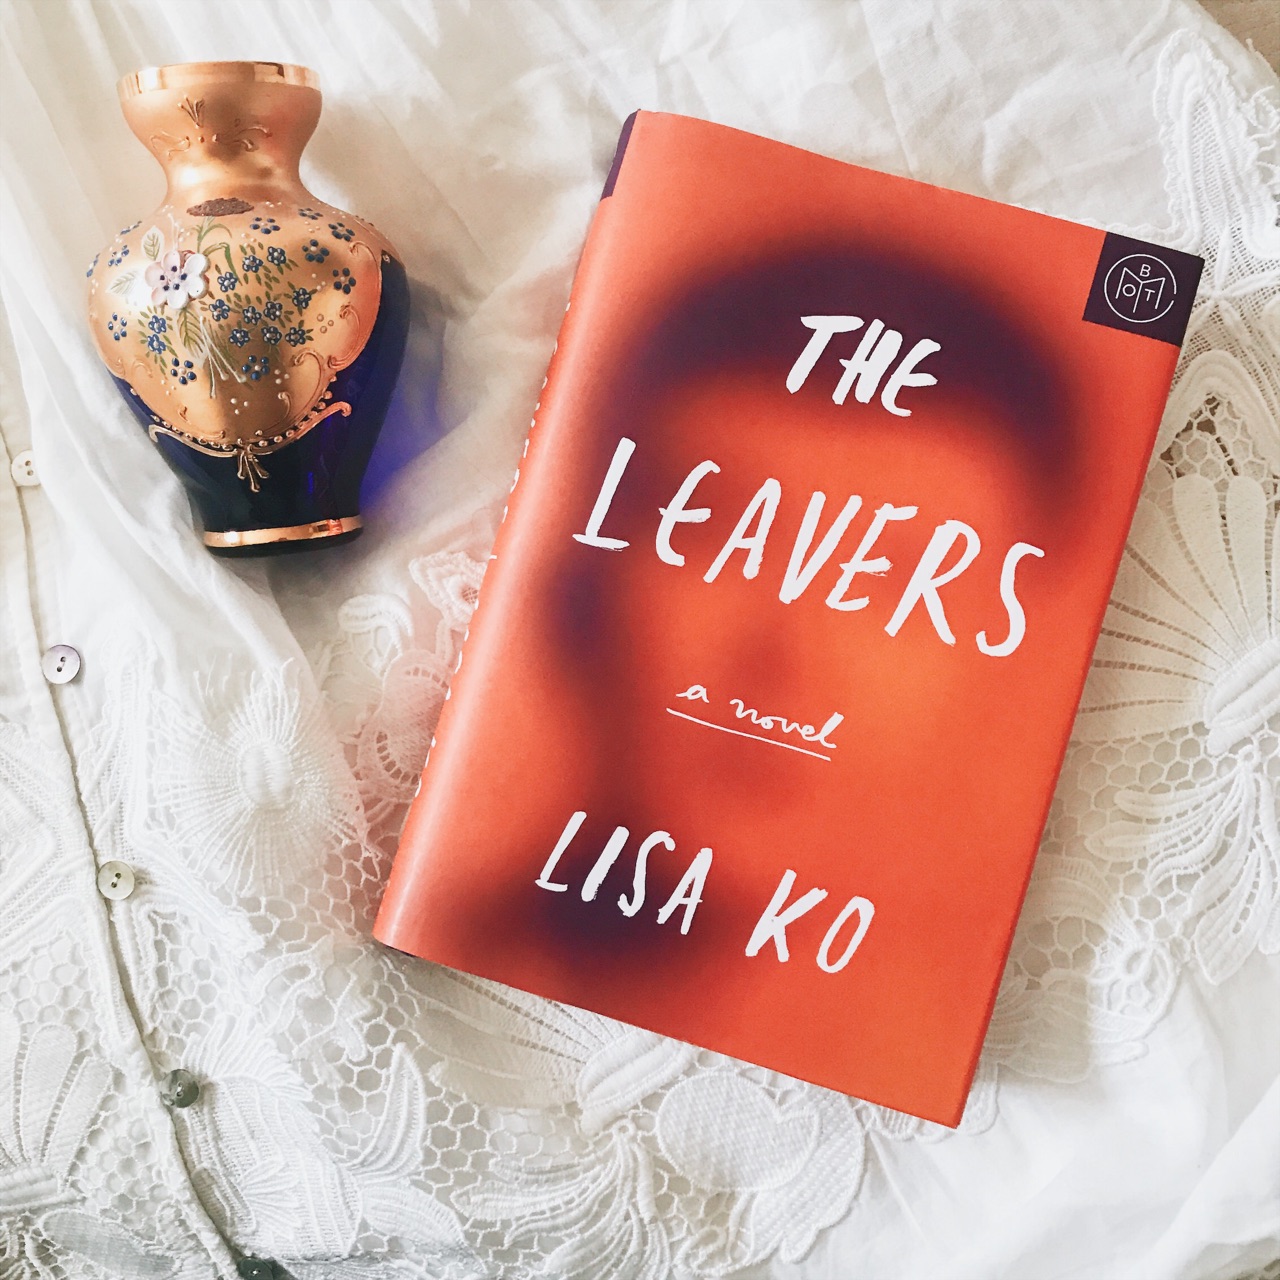 the leavers novel